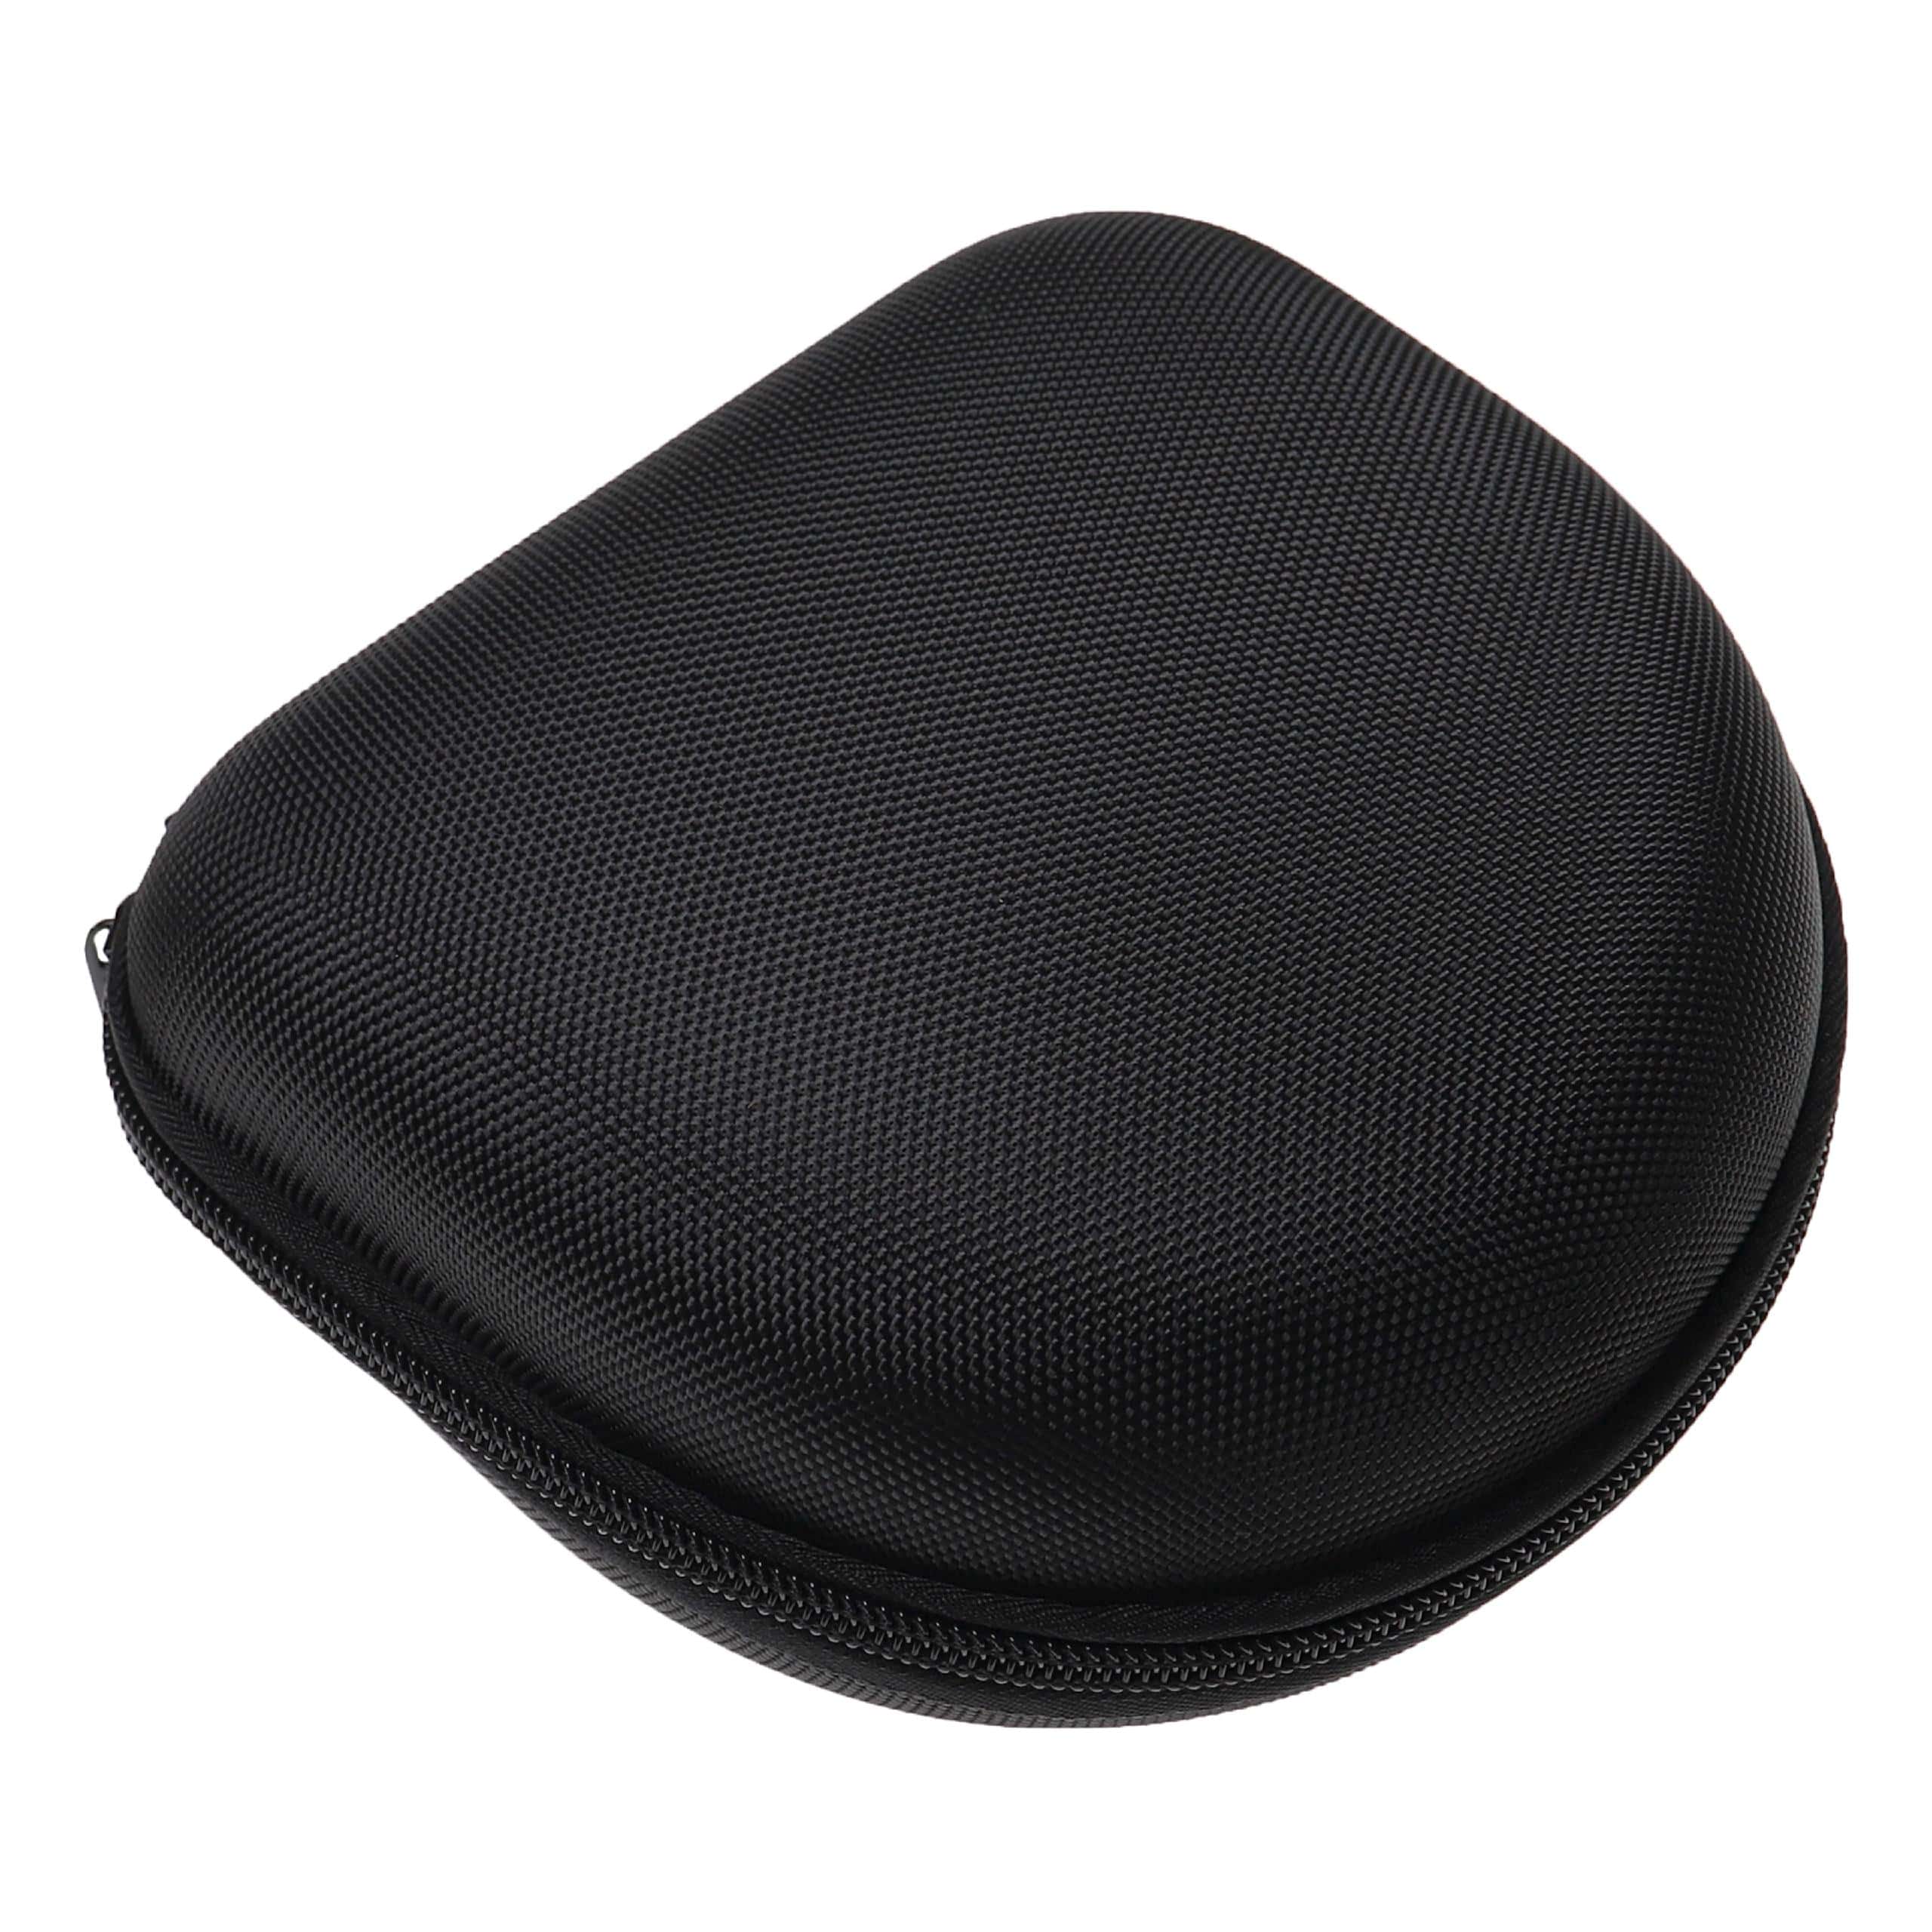 Transport Case suitable for Marshall Major Headphones, Headset - Bag, nylon, black